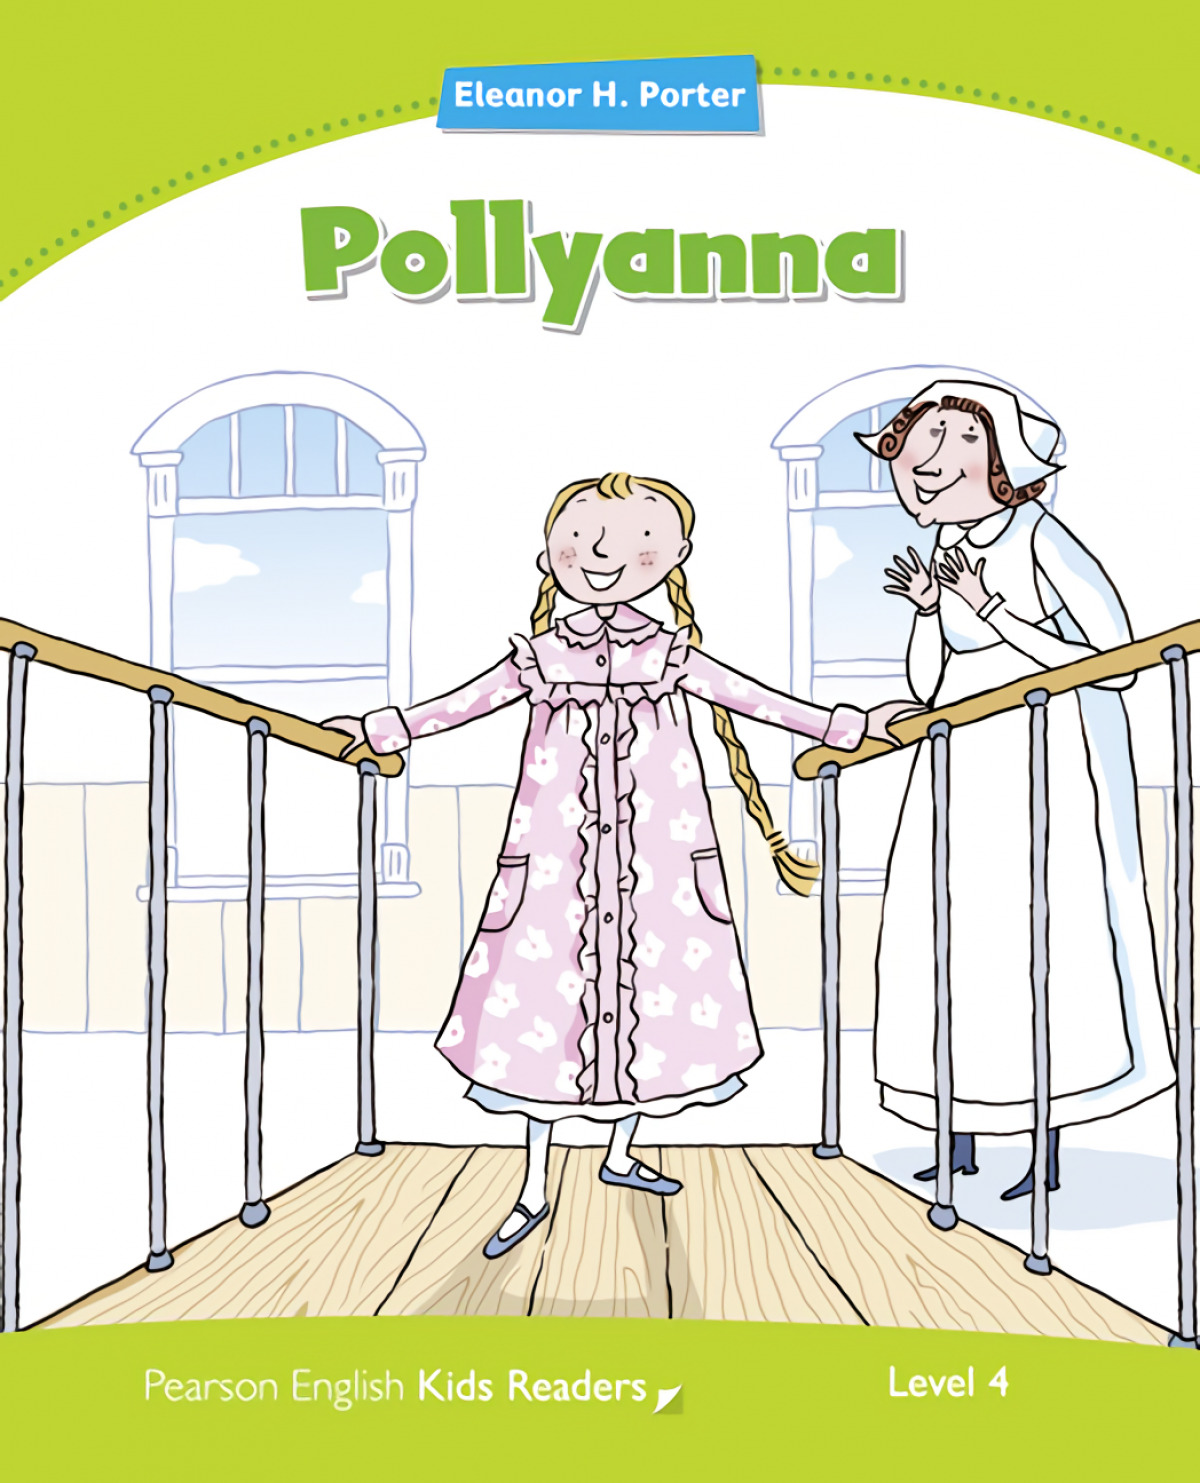 Pollyanna - Porter, Elearno H.